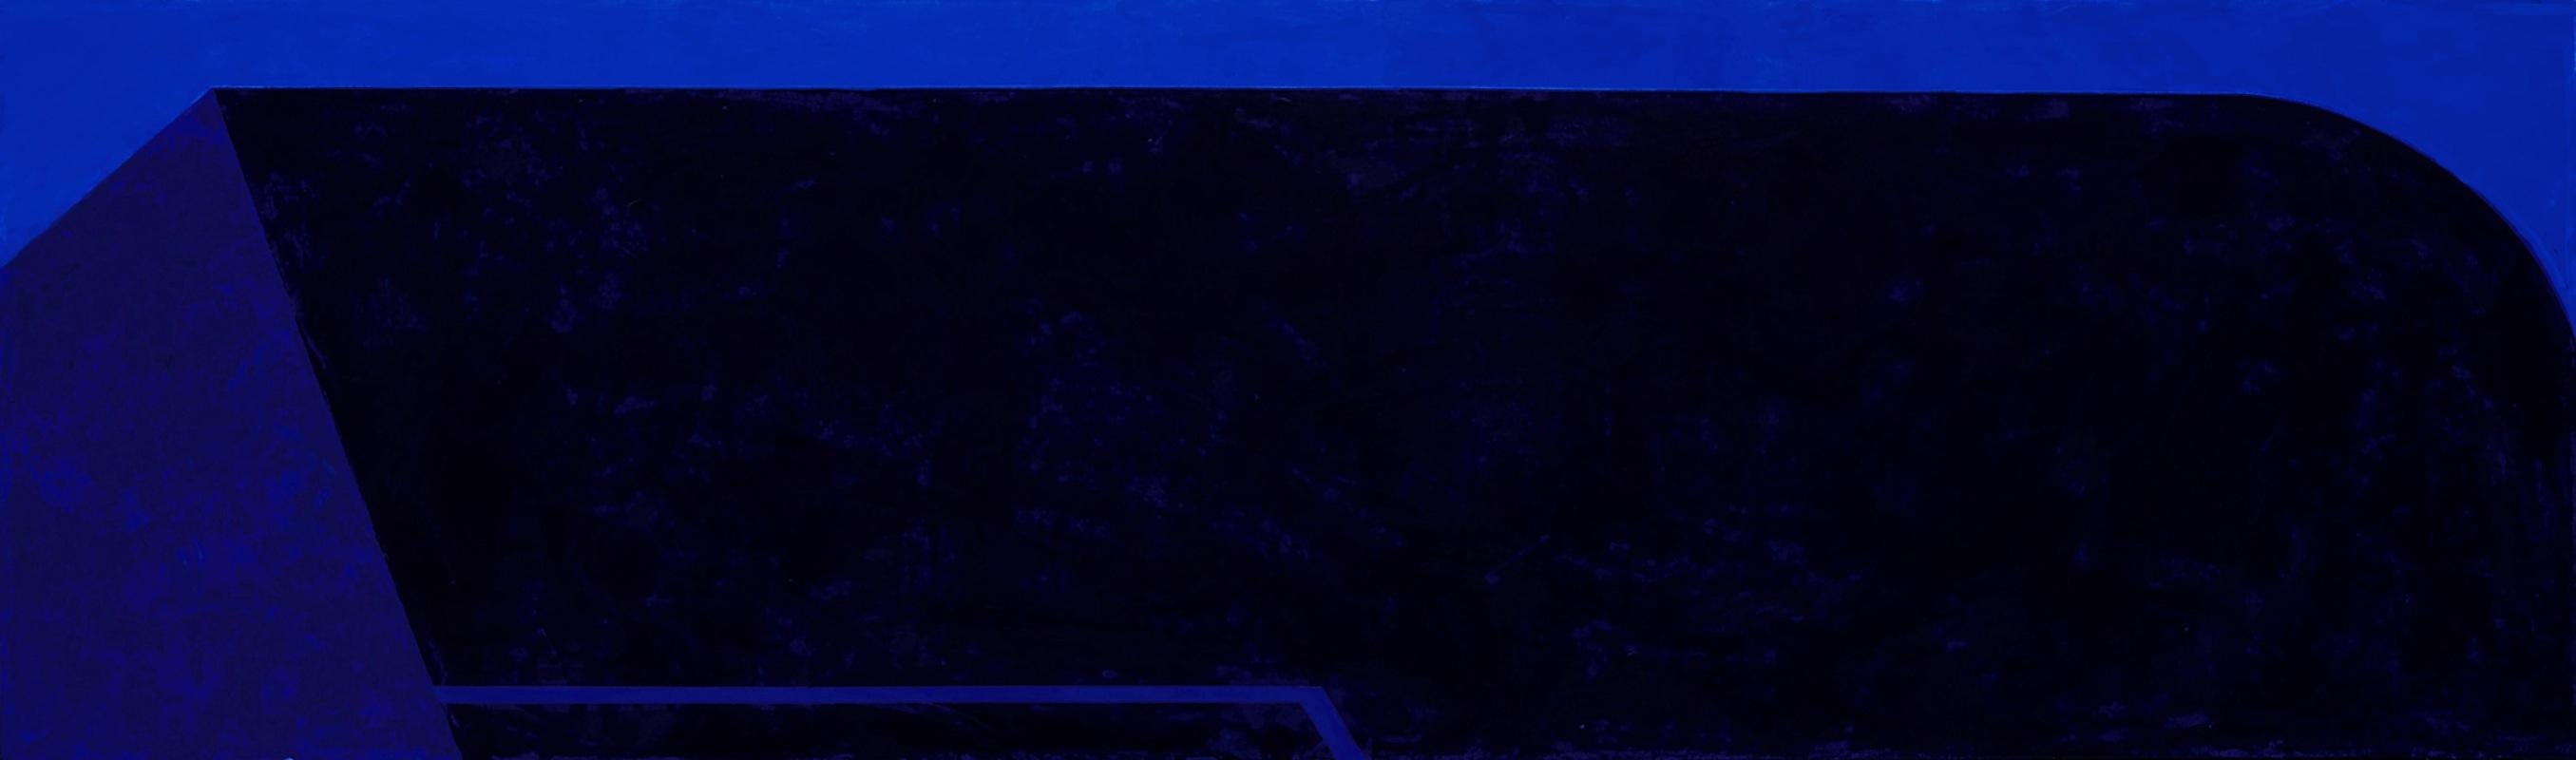 Macyn Bolt, Dark Pool IV, acrylic on canvas, Minimalist, 18 x 60, 2018 For Sale 4